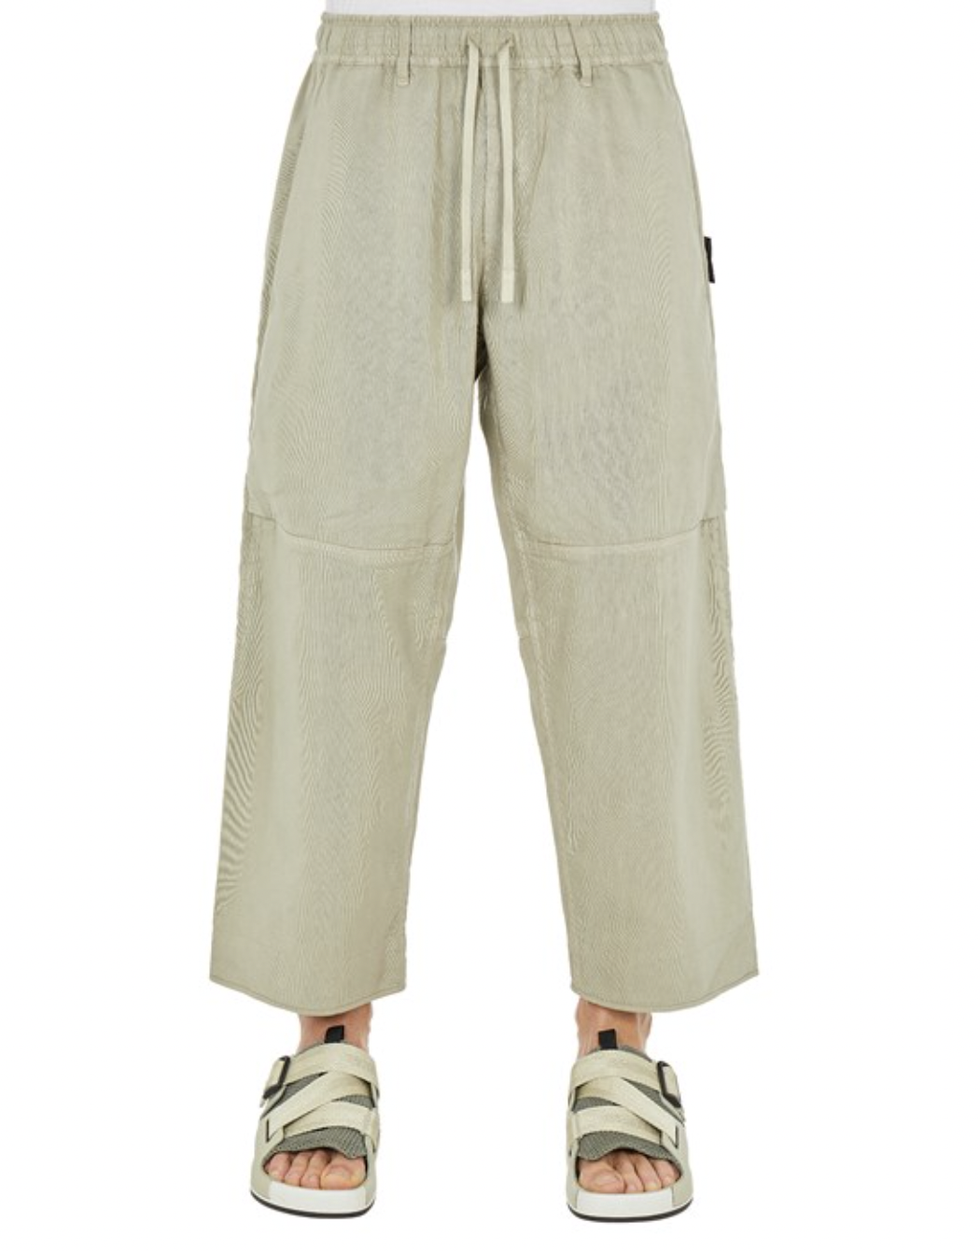 30415 Workwear Wide Pants 